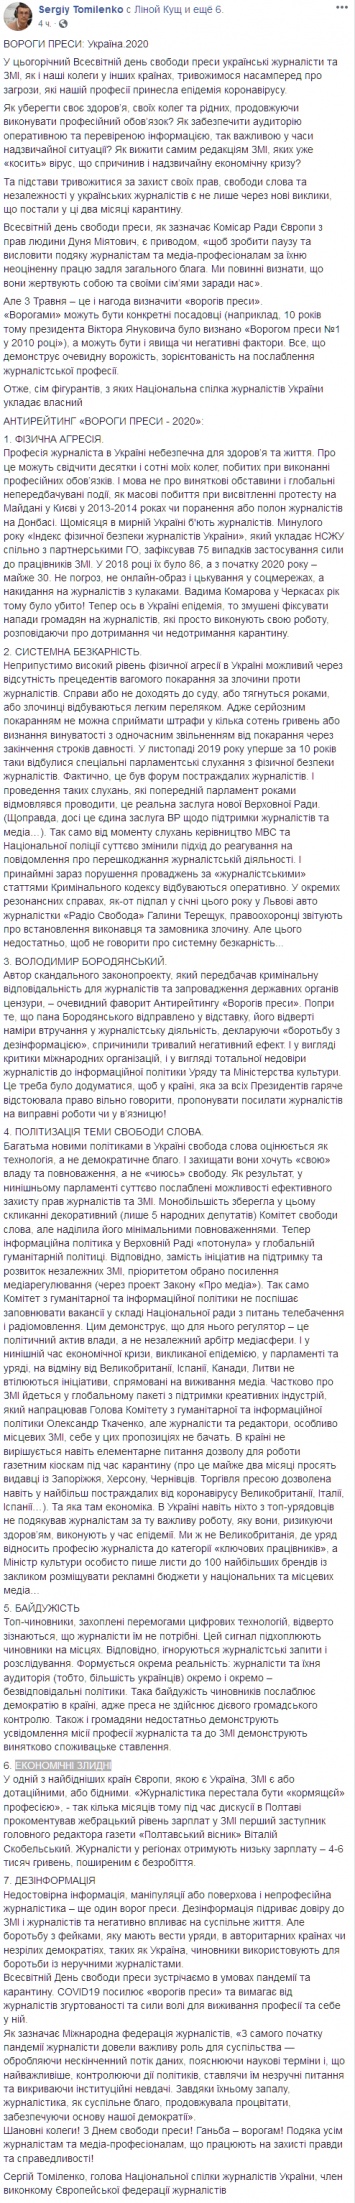 Бородянский объявлен врагом прессы-2020. В НСЖУ назвали главные угрозы для украинских журналистов